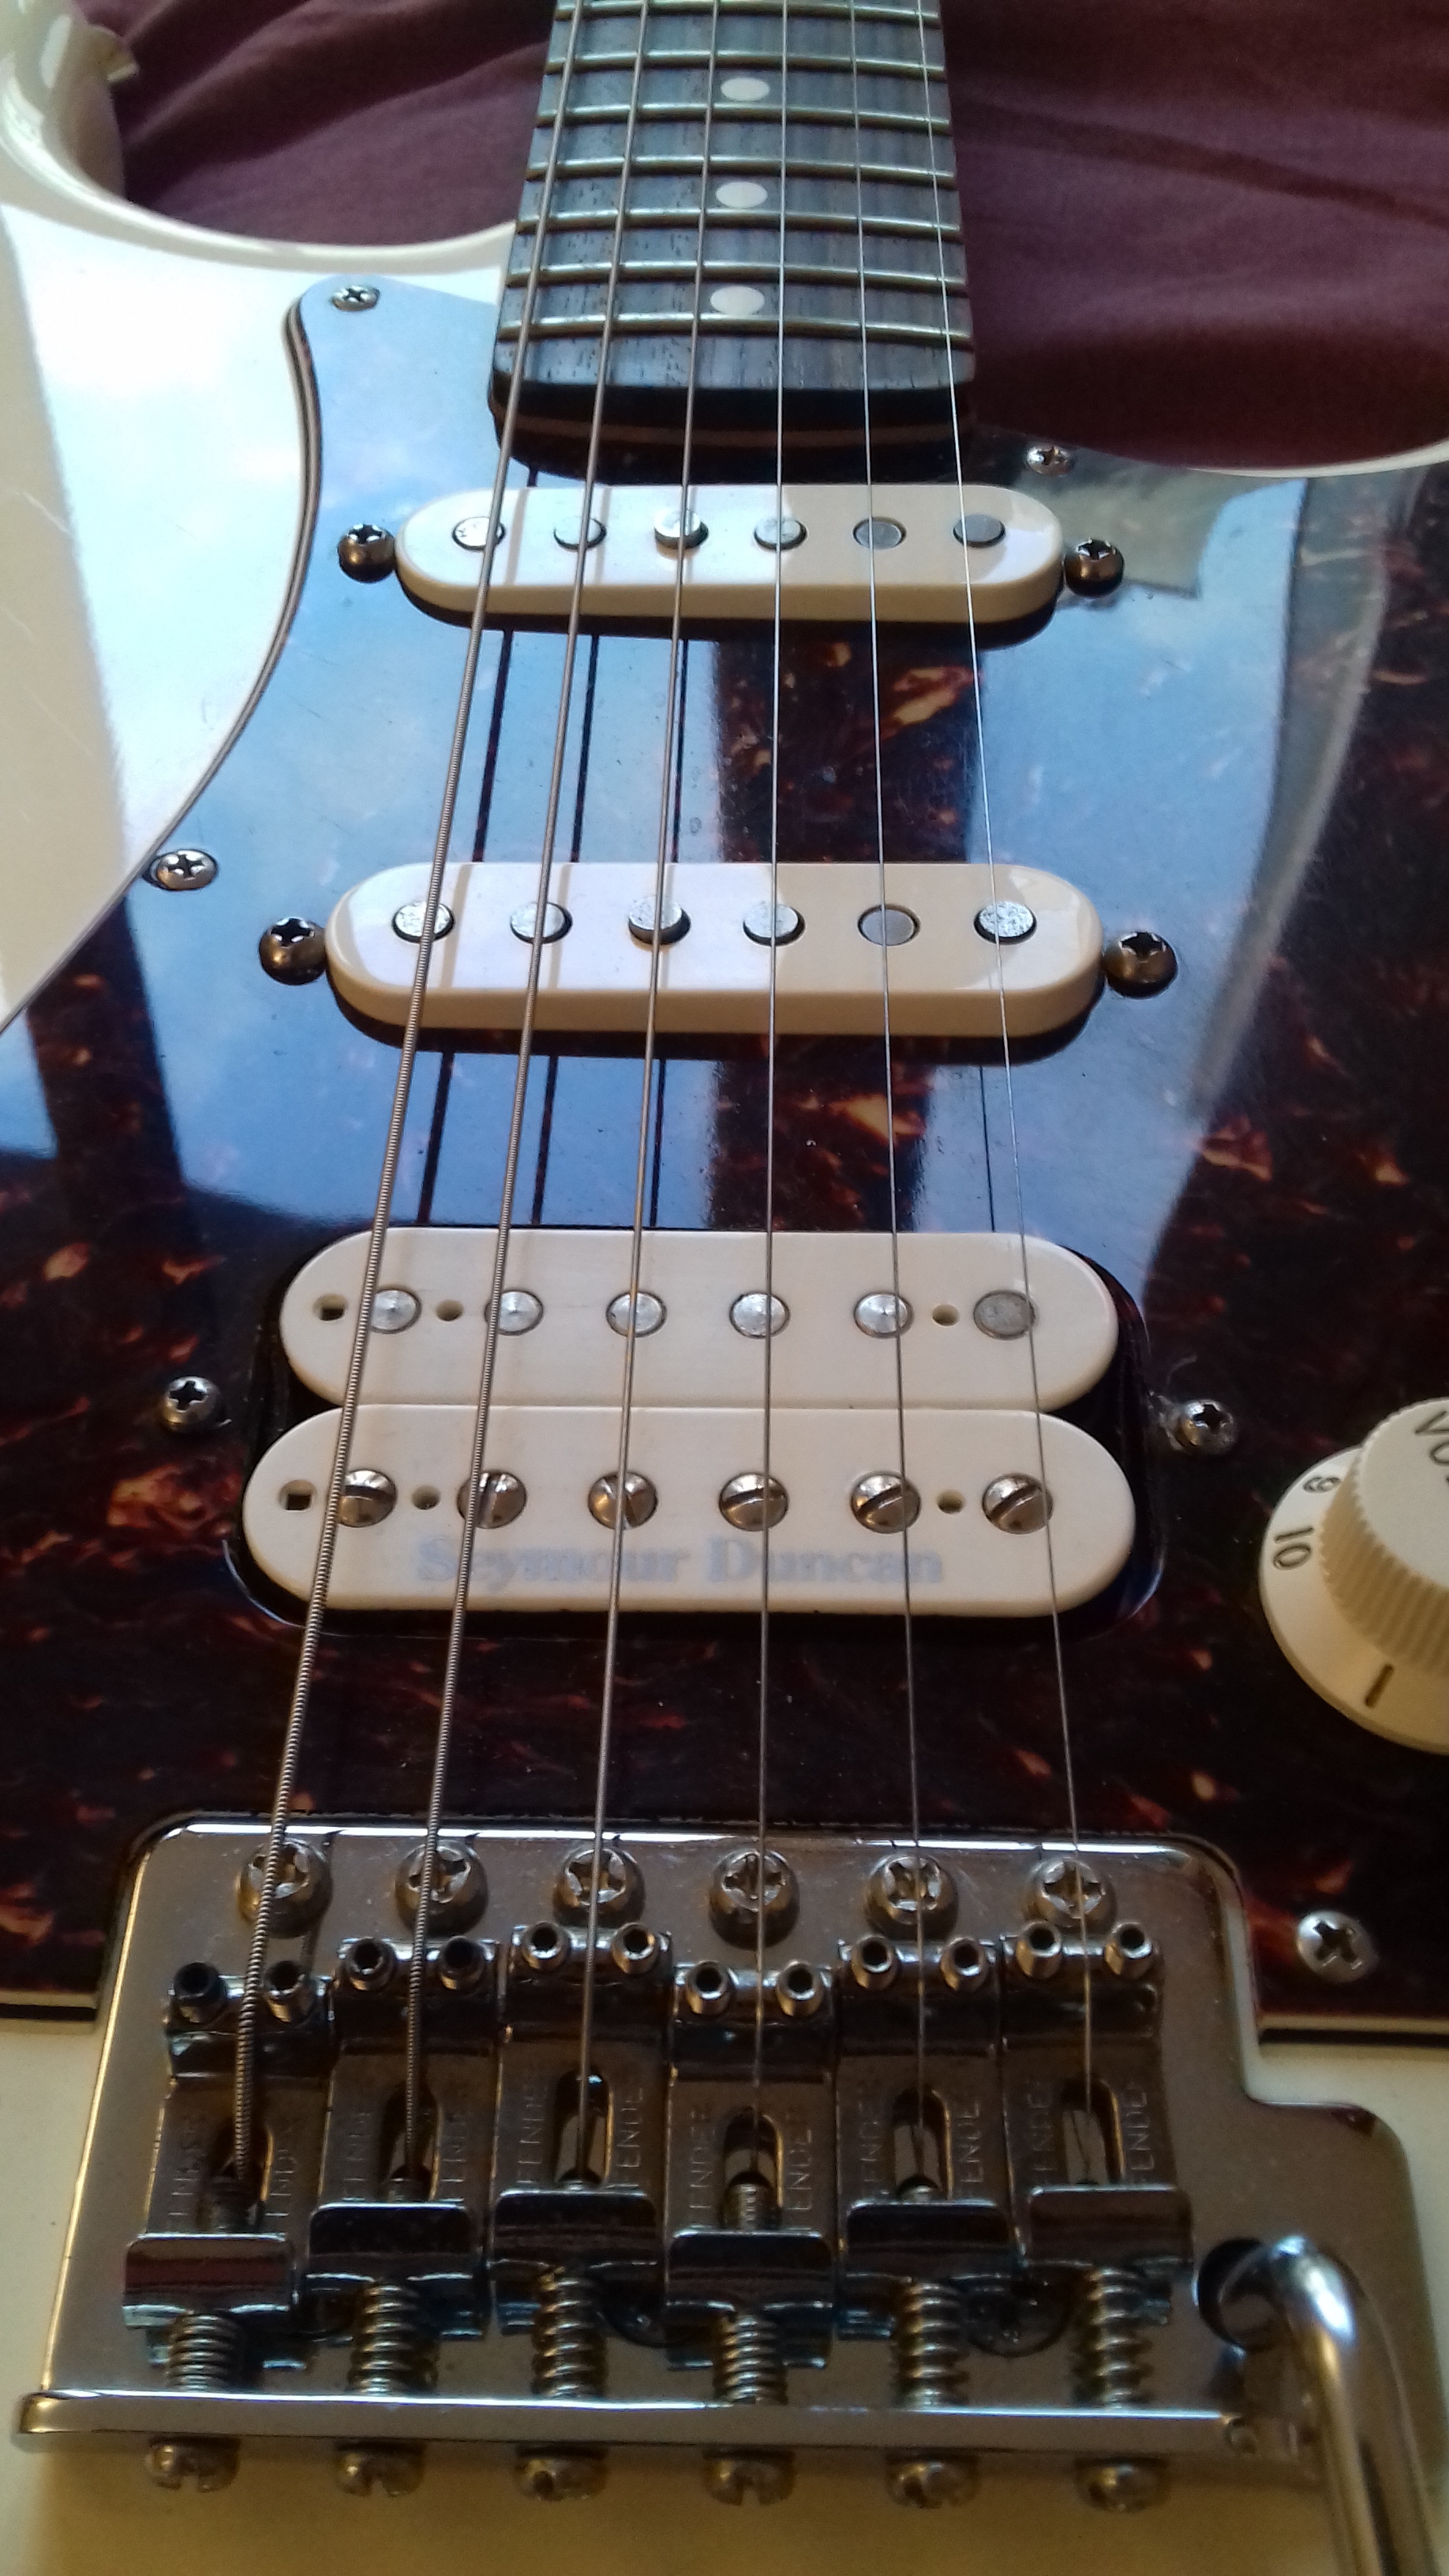 Deluxe Lone Star Stratocaster [2007-2013] Fender - Audiofanzine